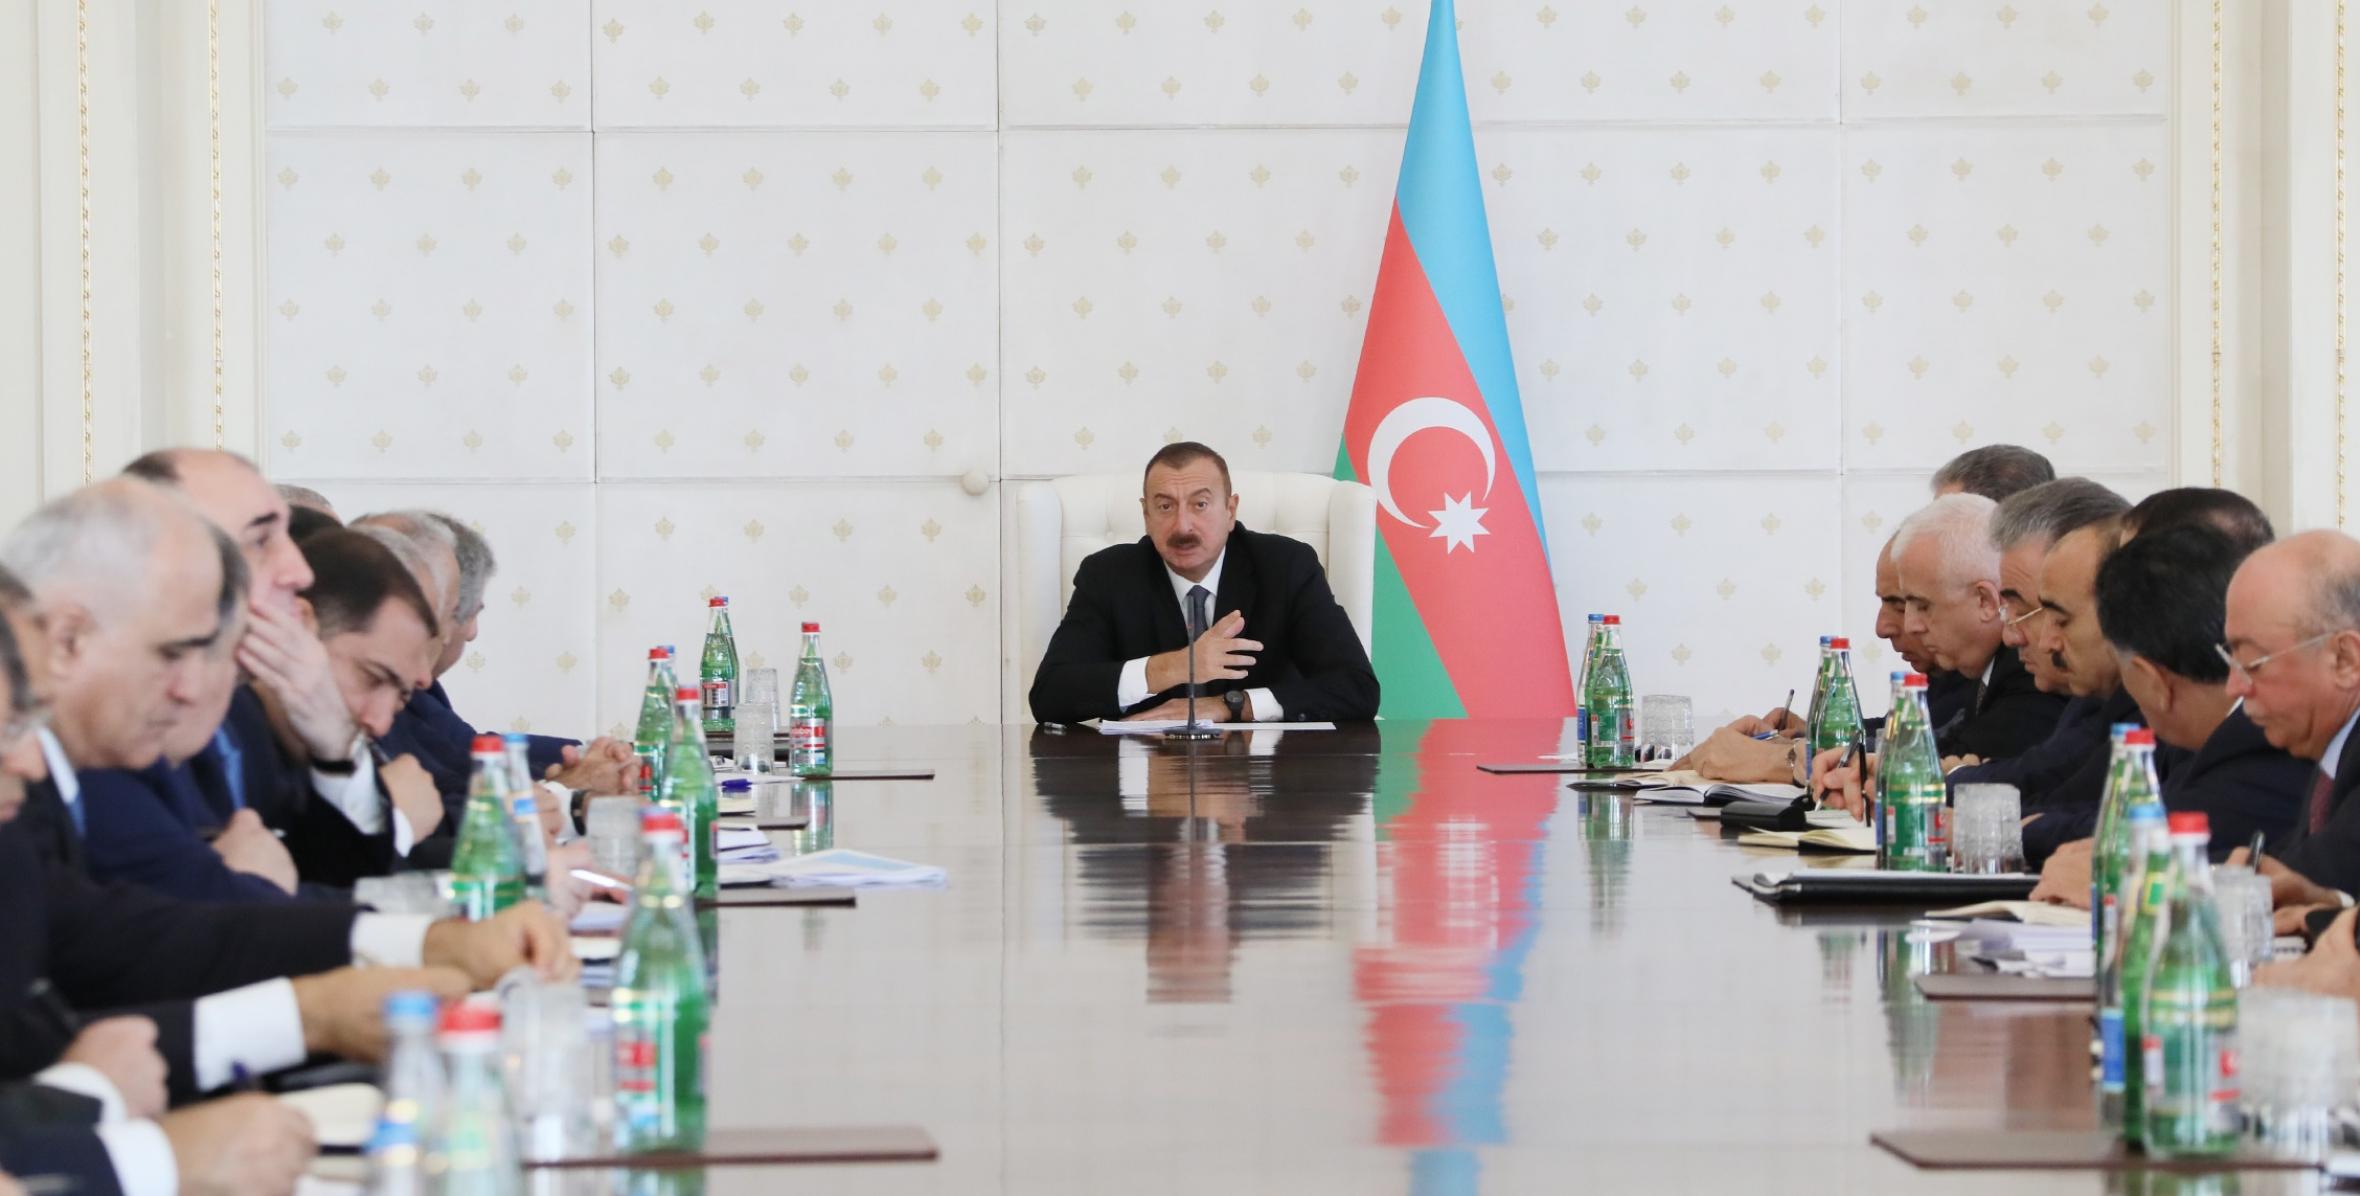 Заключительная речь Ильхама Алиева на заседании Кабинета Министров, посвященное итогам социально-экономического развития девяти месяцев 2017 года и предстоящим задачам